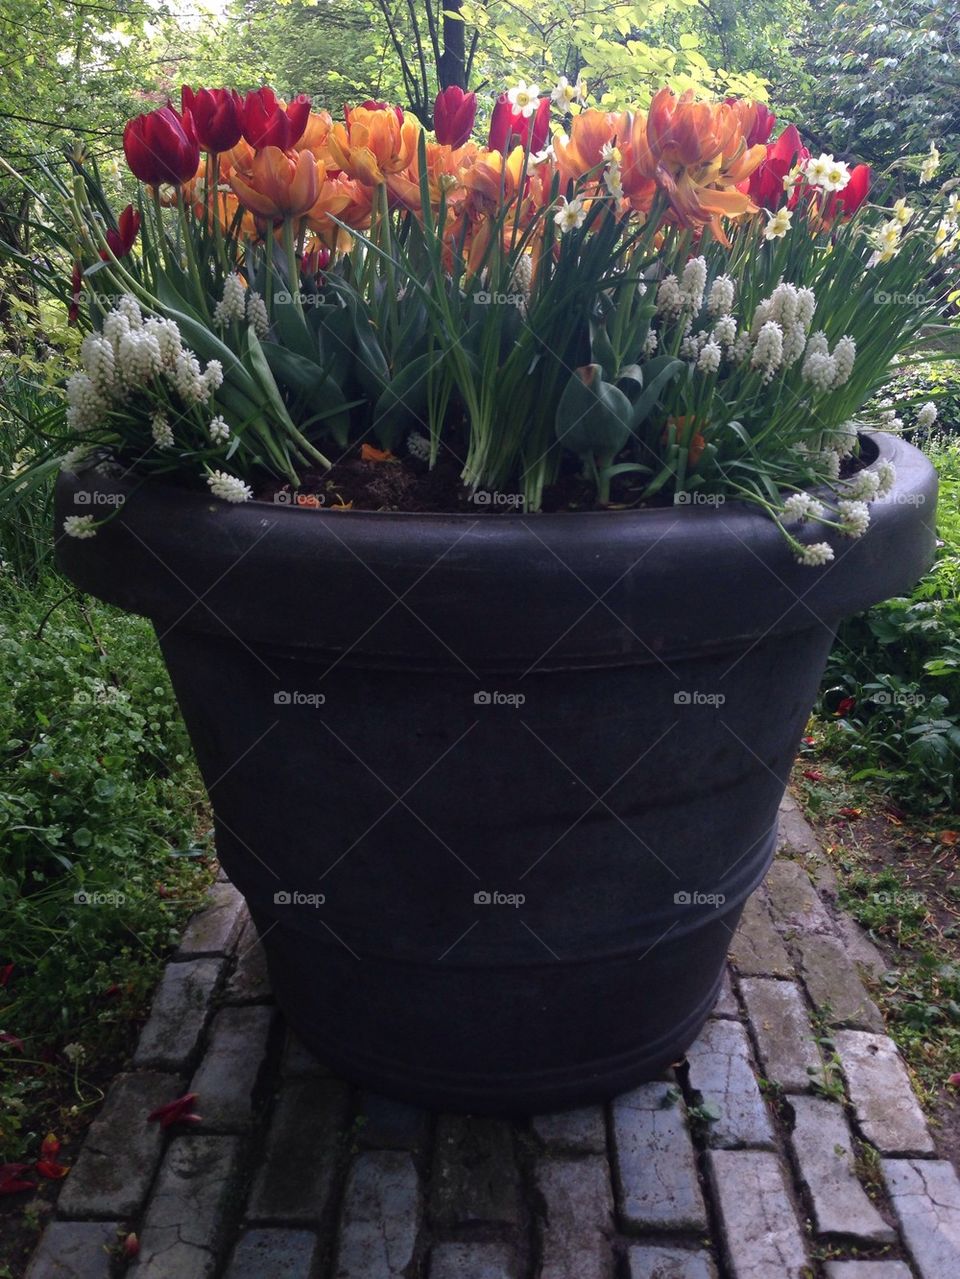 The flower/ tulip gardens in Keukenhof , the Netherlands (holland)  